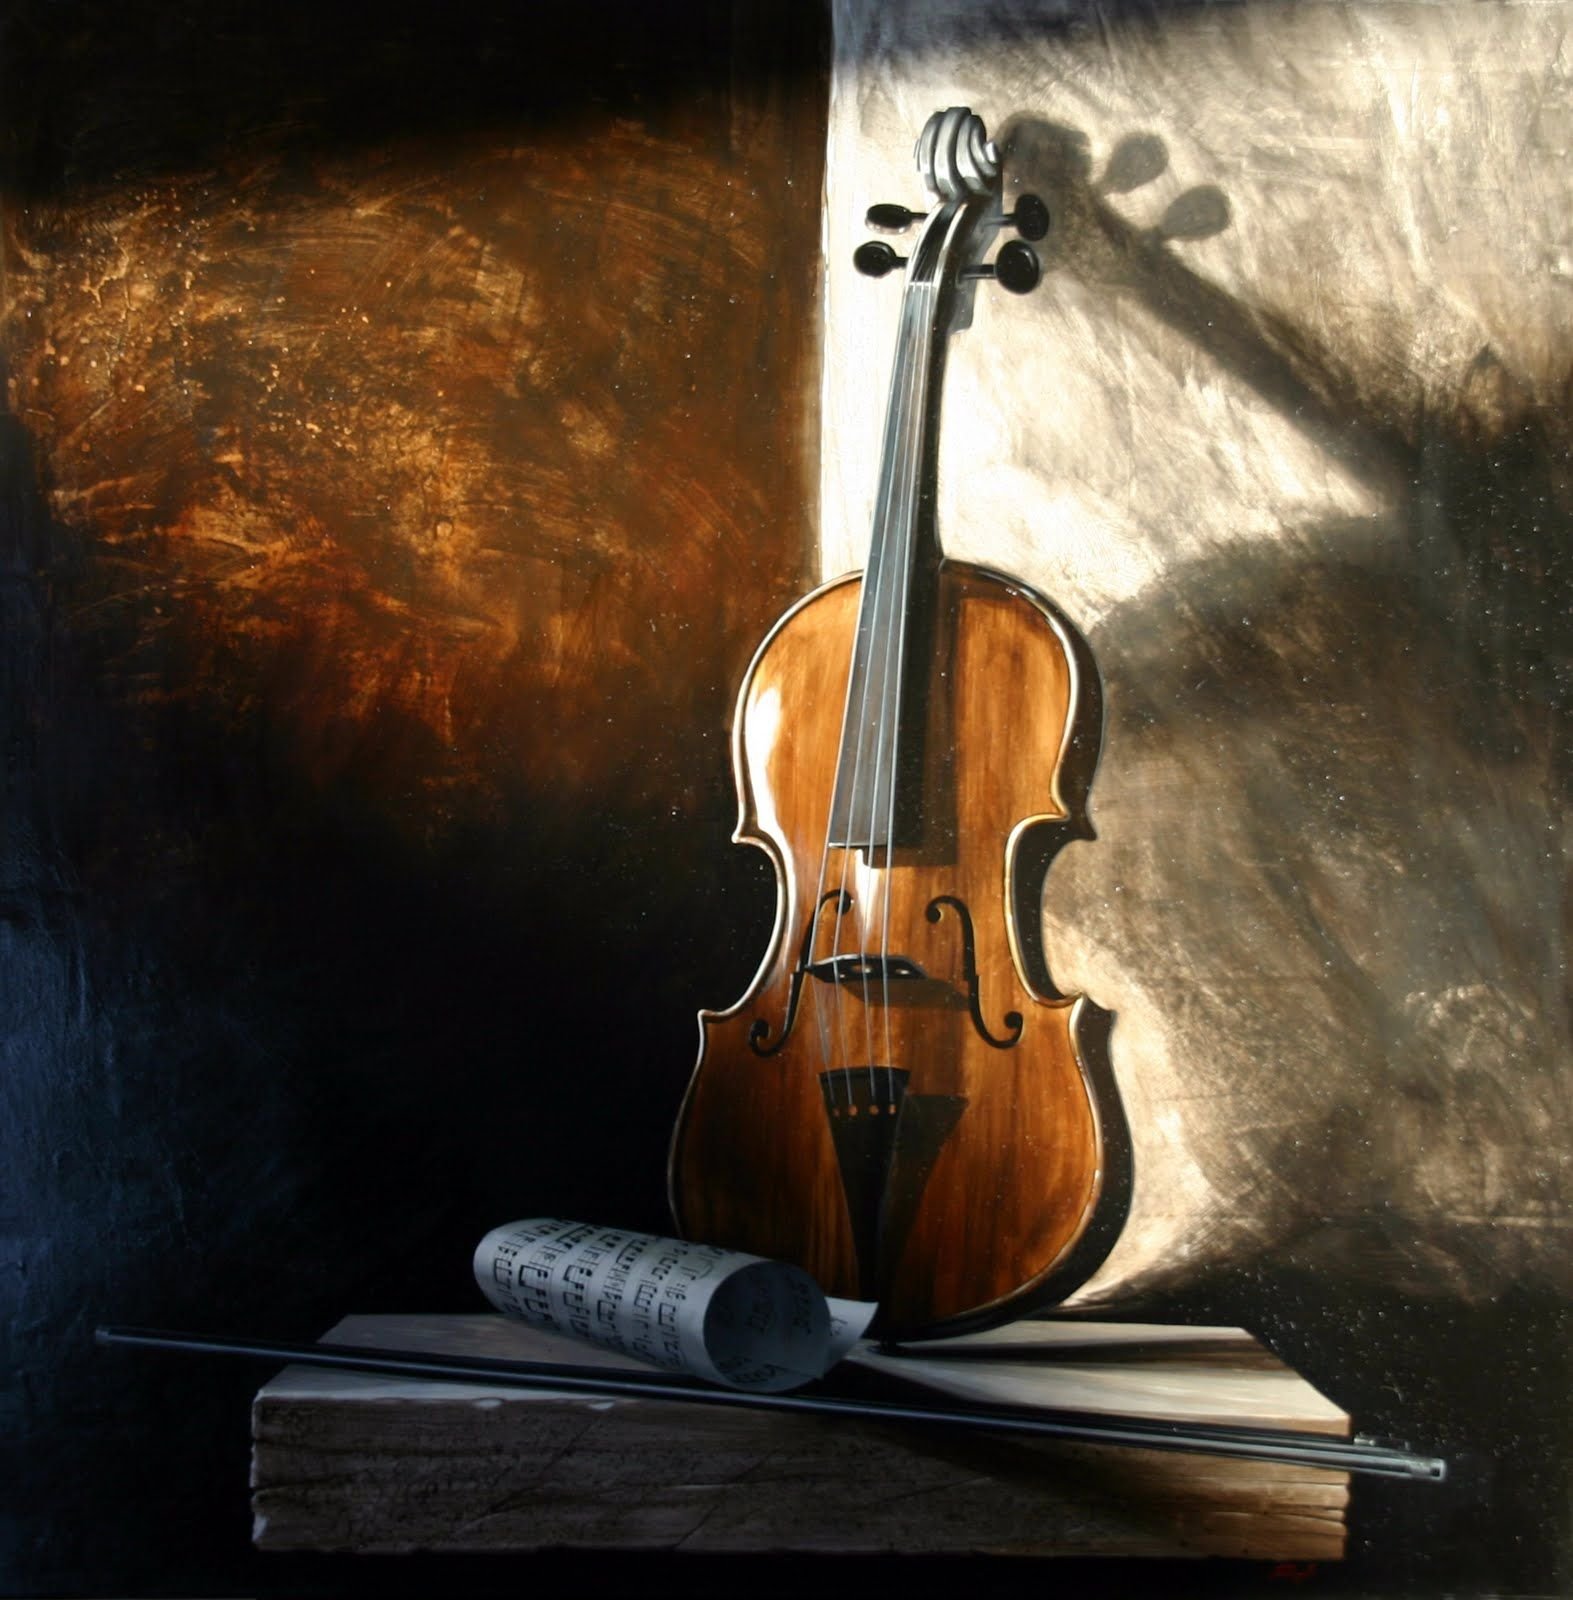 Изображение скрипки. Скрипка. Красивая скрипка. Натюрморт с музыкальными инструментами. Скрипка фото.